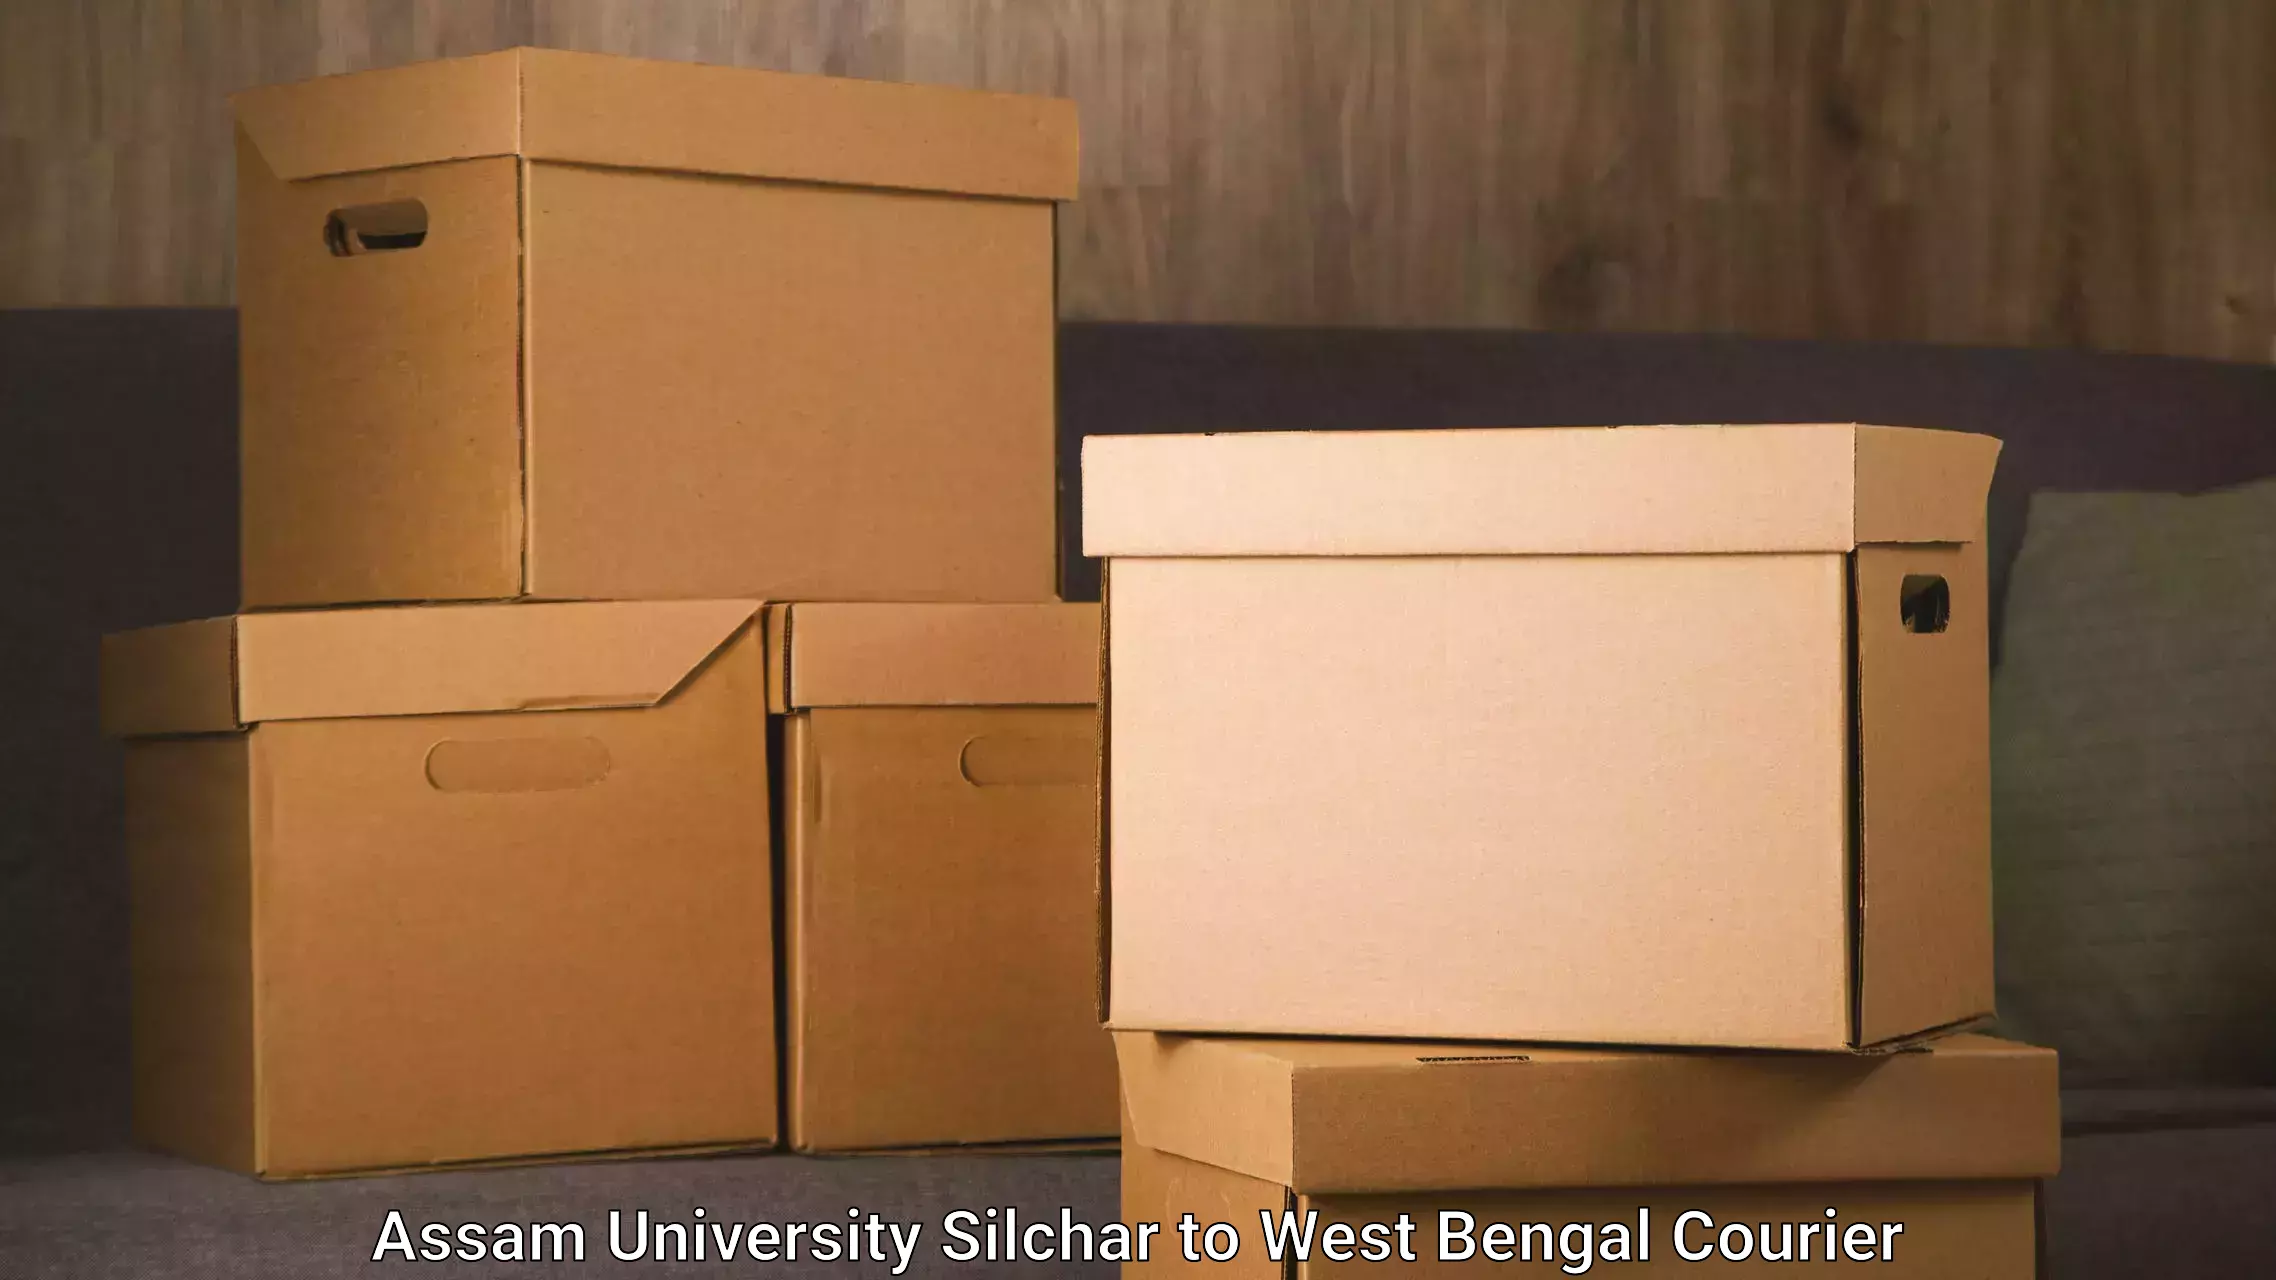 Door-to-door freight service Assam University Silchar to Kalimpong